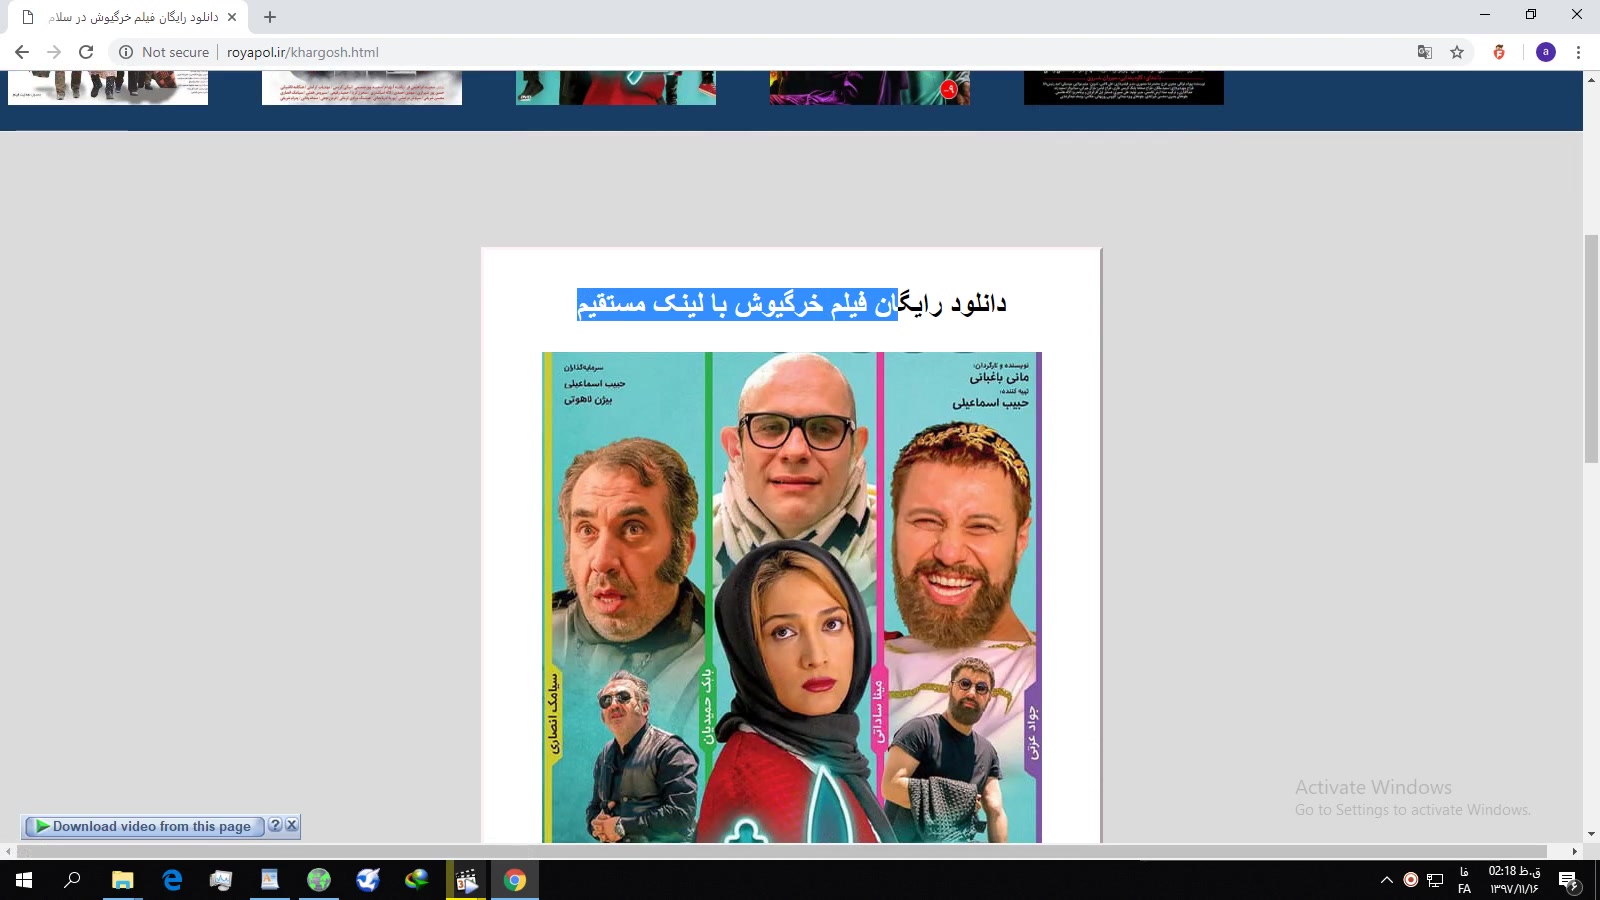 دانلود رایگان جدید ترین فیلم و سریال های بروز ایرانی در رسانه سلام رایگان 2